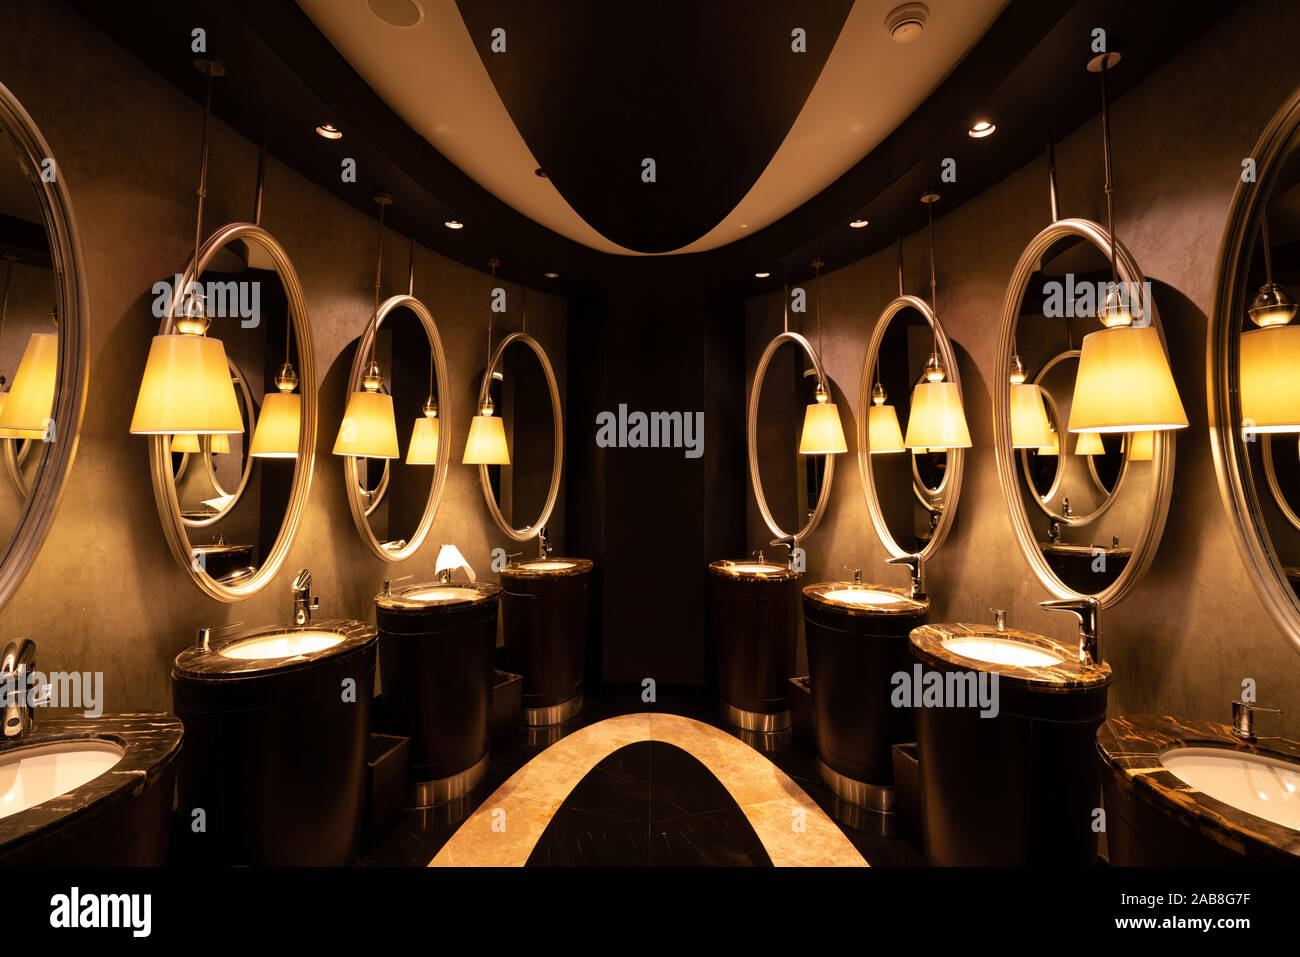 Un moderno decorato, toilette pubblica con specchi in un ristorante di lusso o hotel. Foto Stock